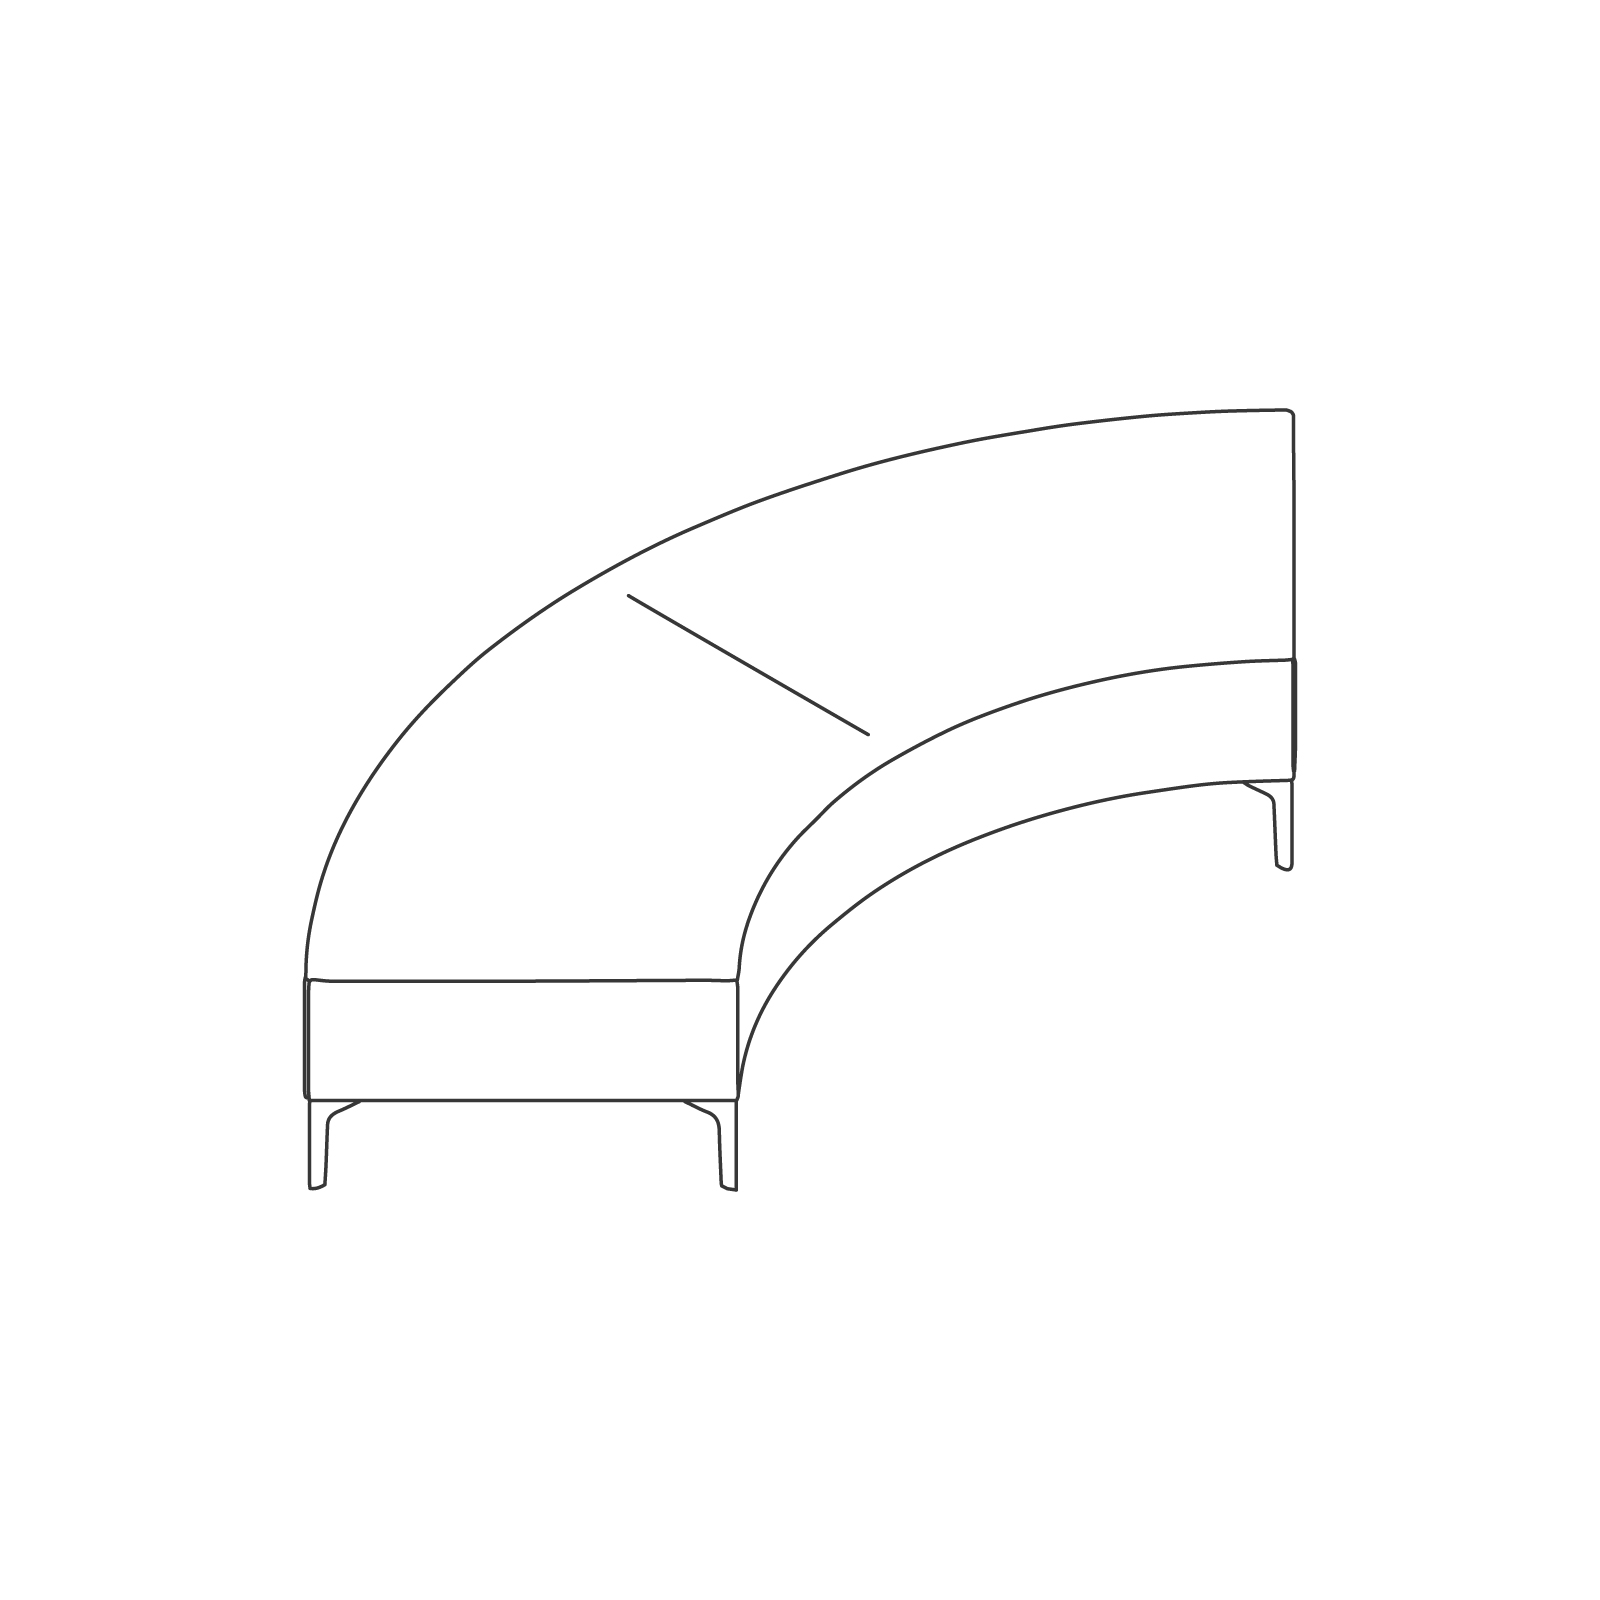 Um desenho de linha - Banco Symbol – Curva de 90°